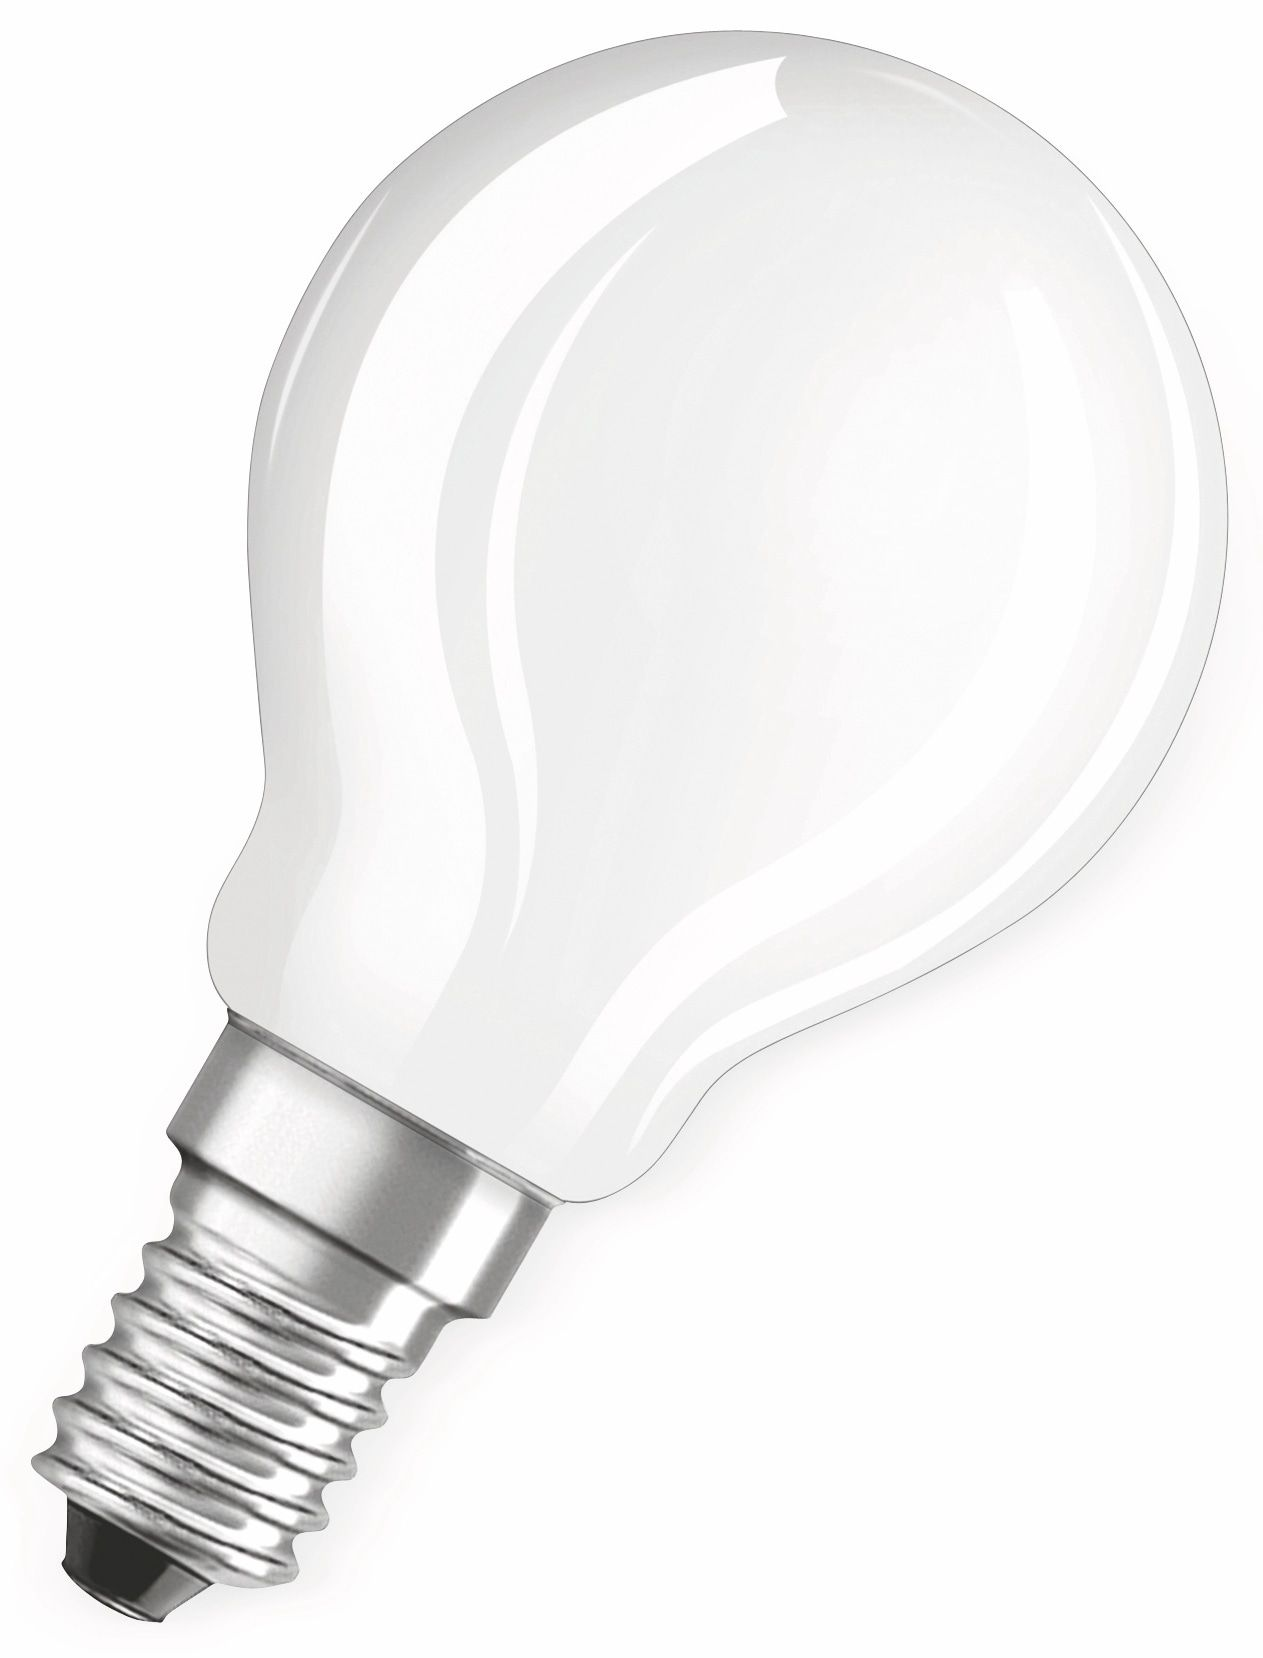 OSRAM  LED BASE CLASSIC P Warmweiß LED Lampe 470 Lumen